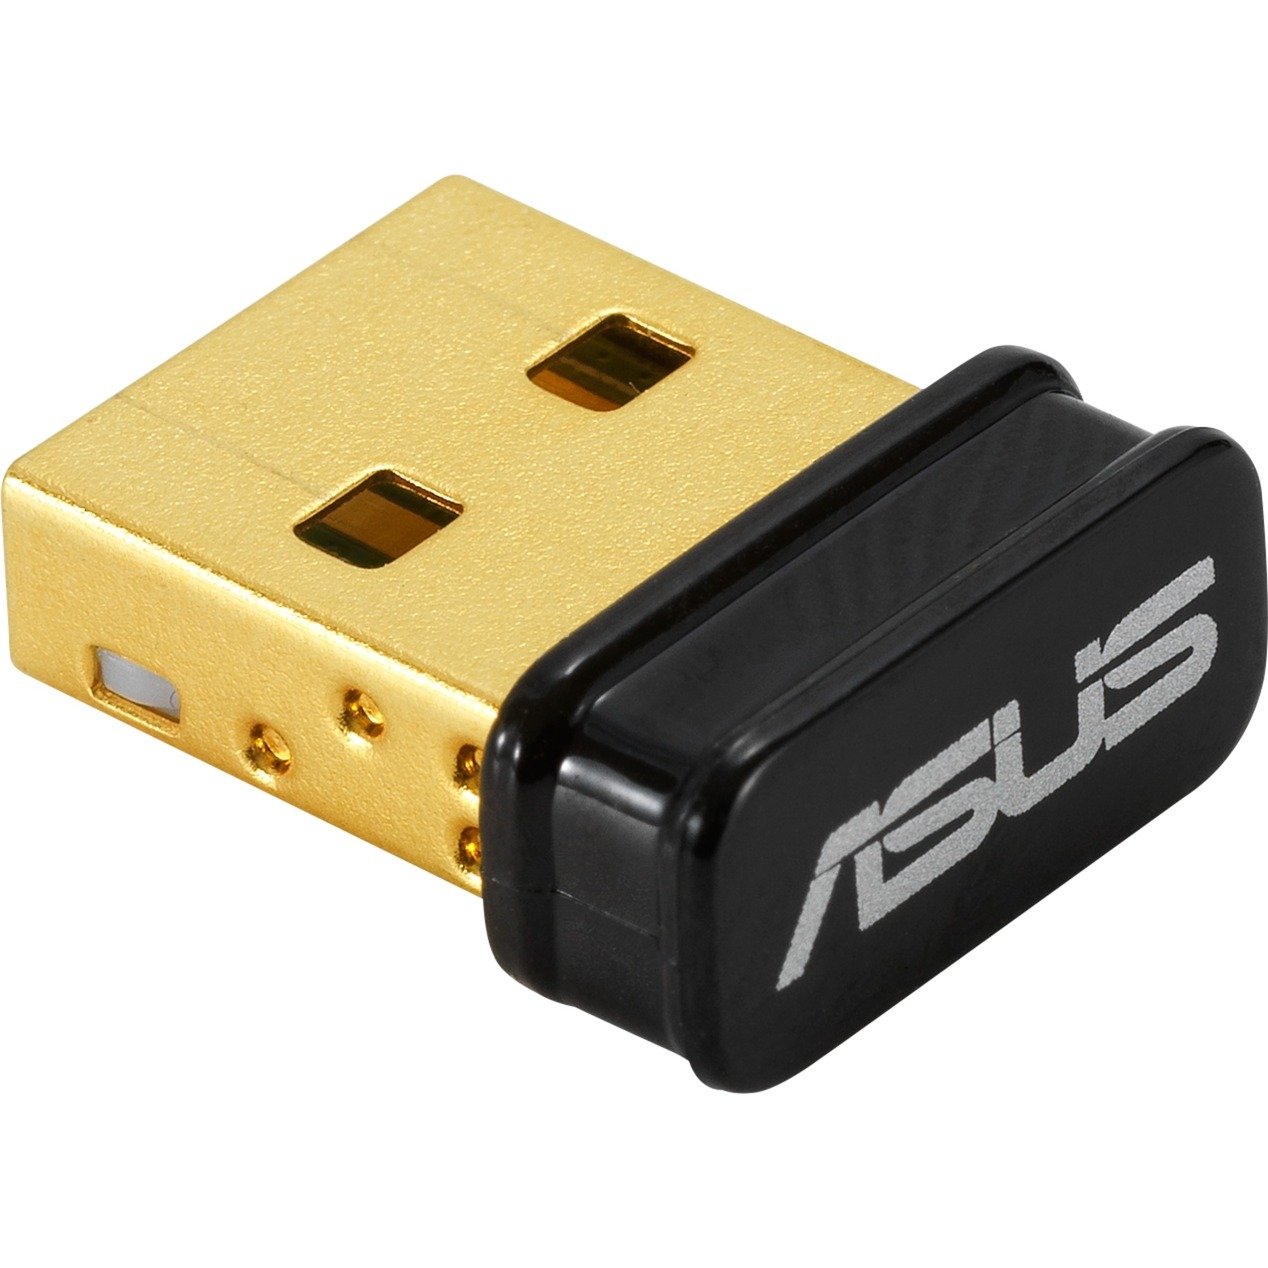 USB-BT500, Bluetooth-Adapter von Asus